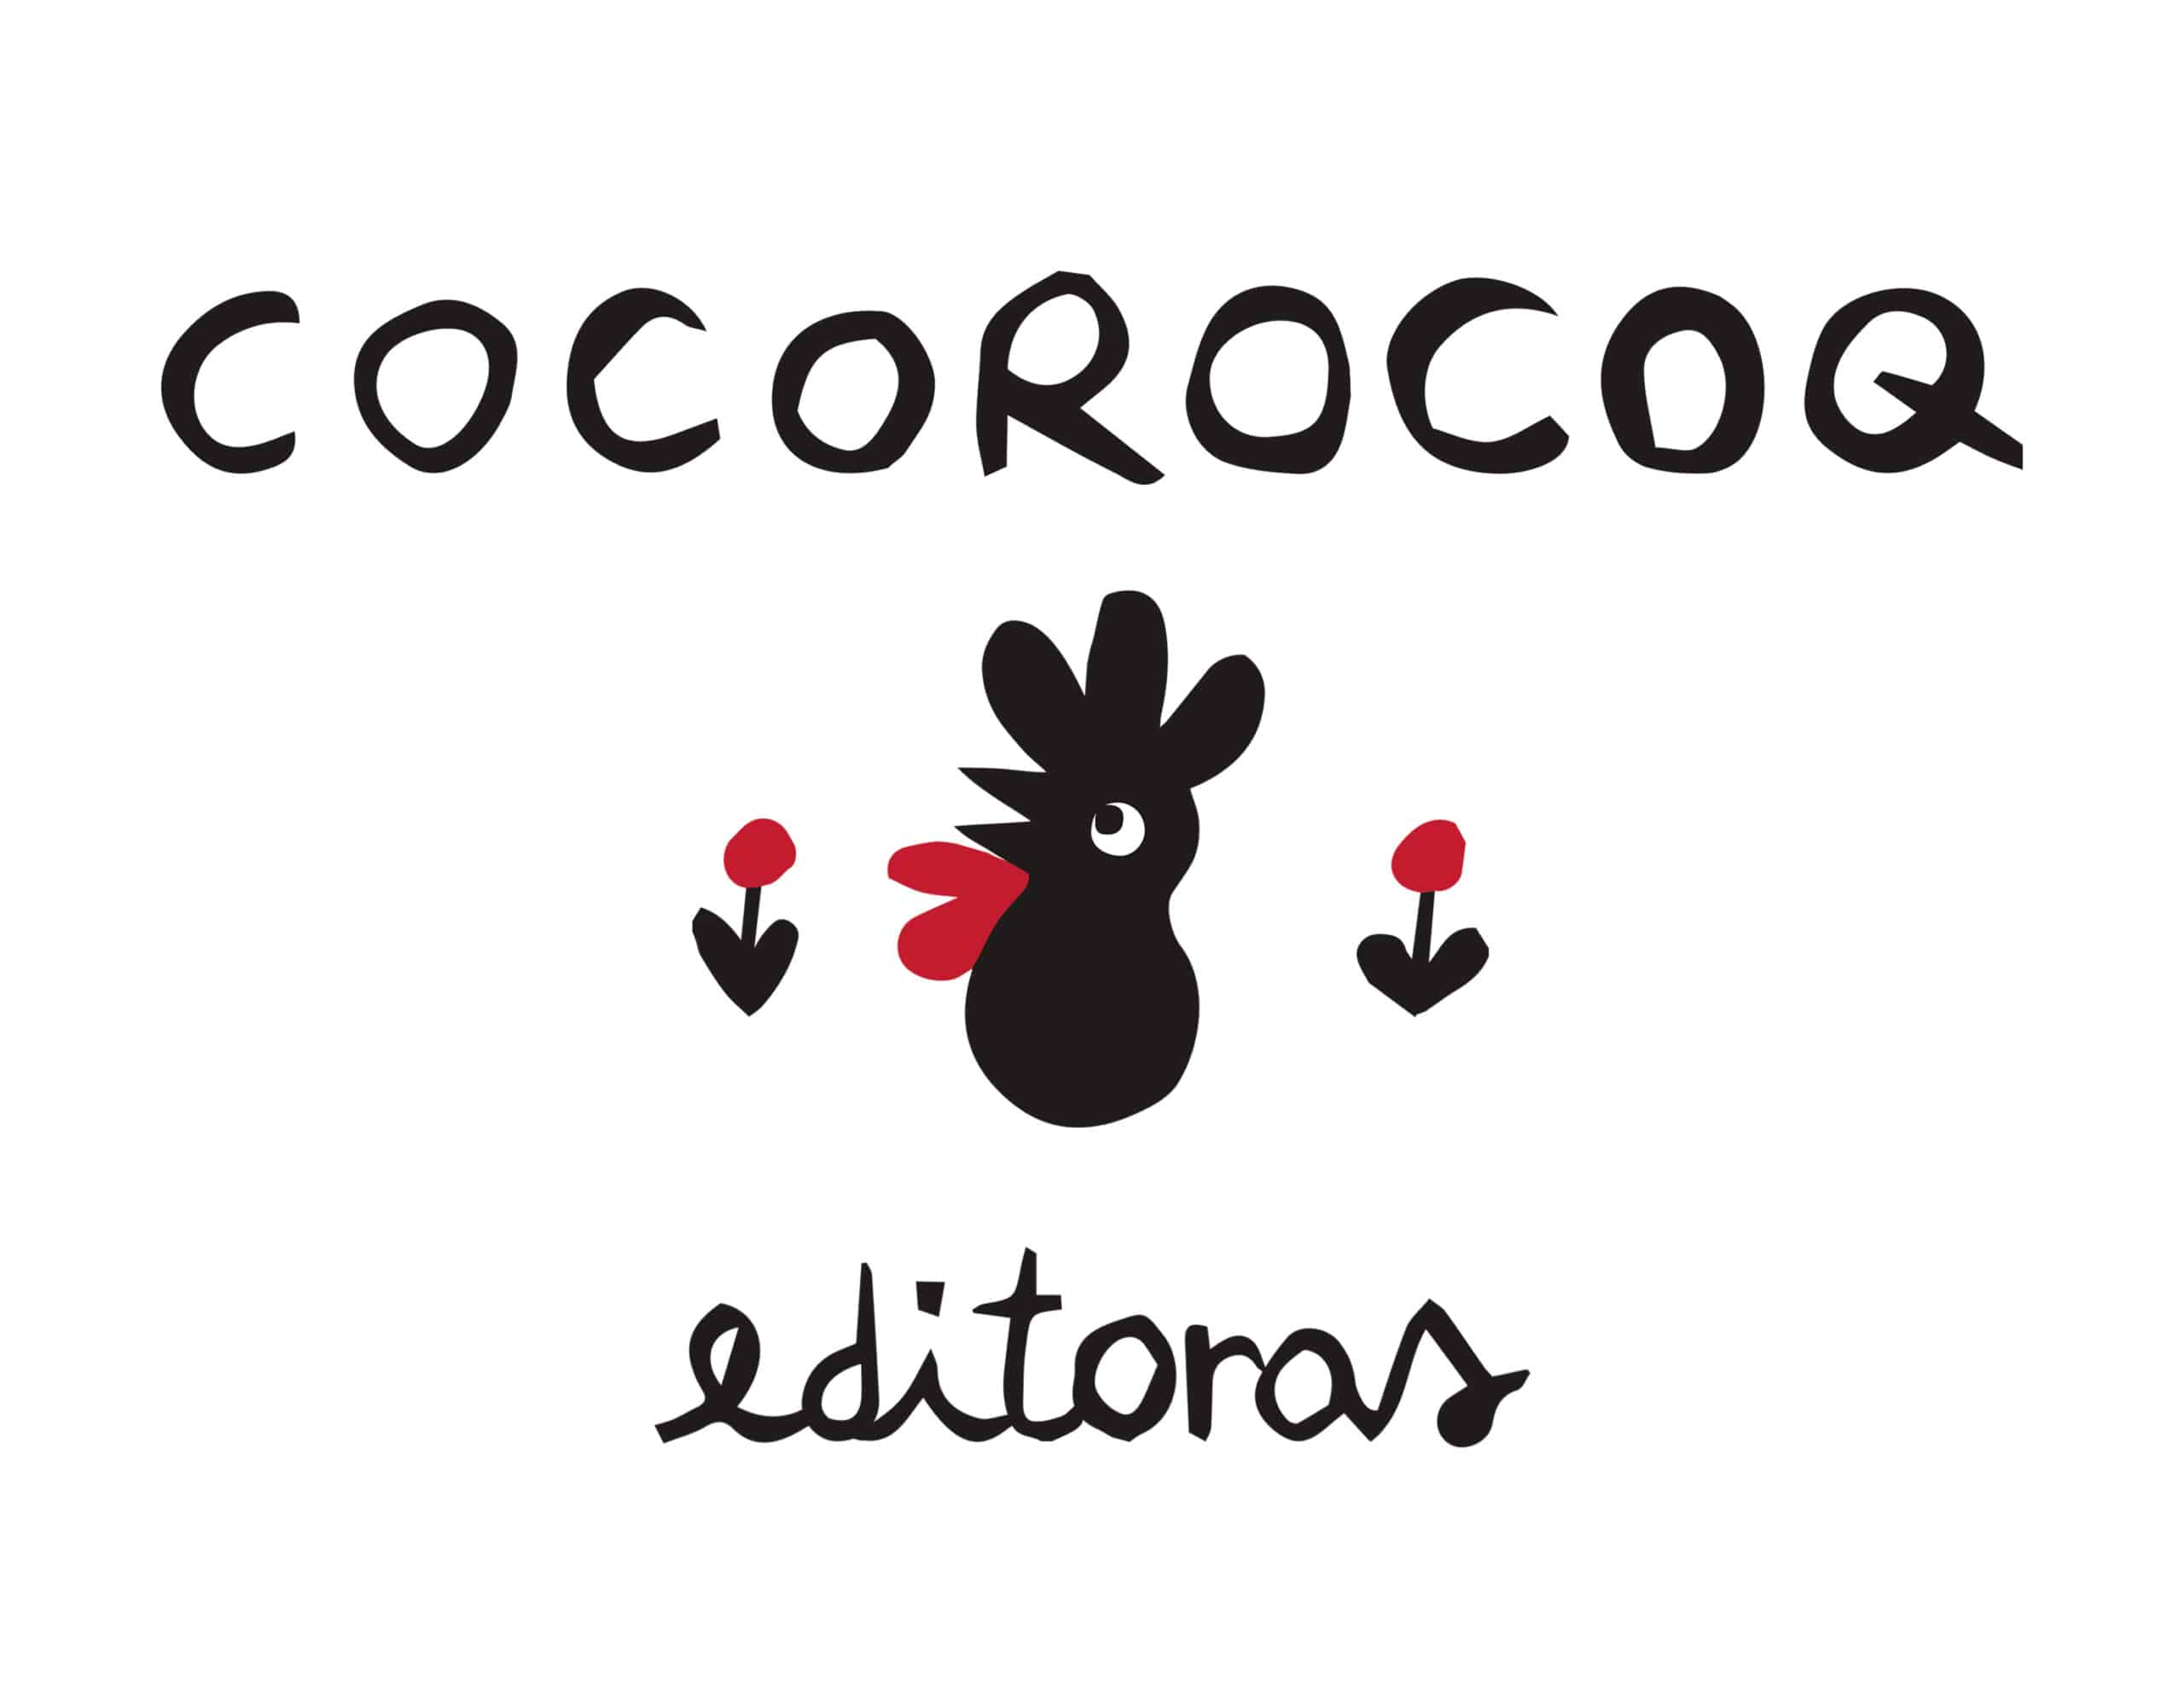 Cocorocoq